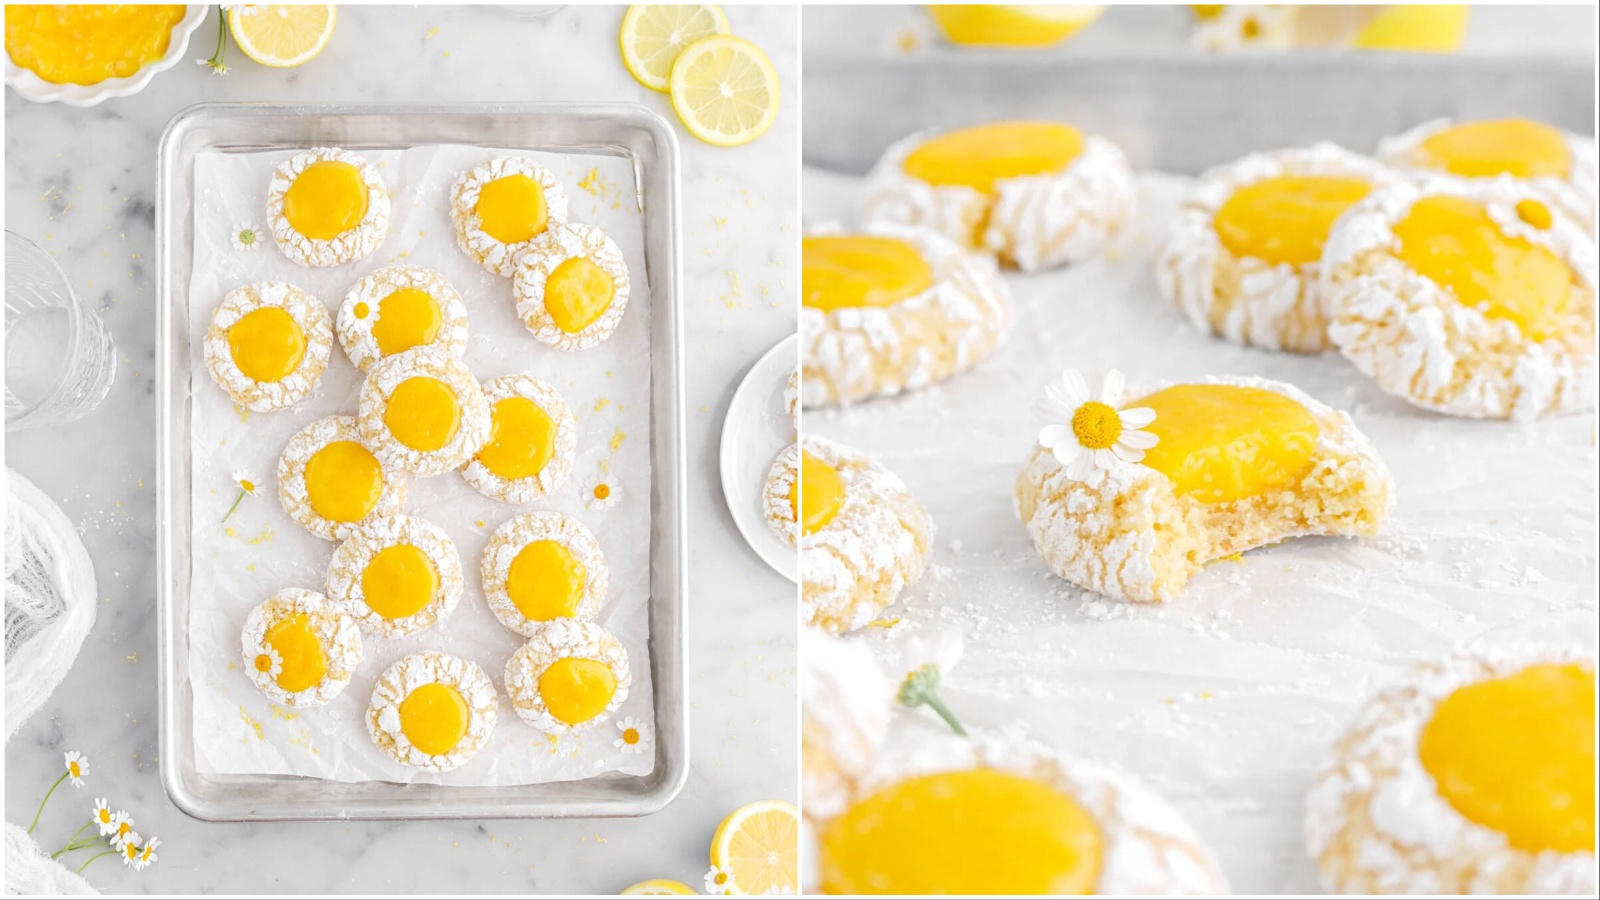 Izgleda da već imamo favorita među blagdanskim kolačićima – raspucance s kremom od limuna